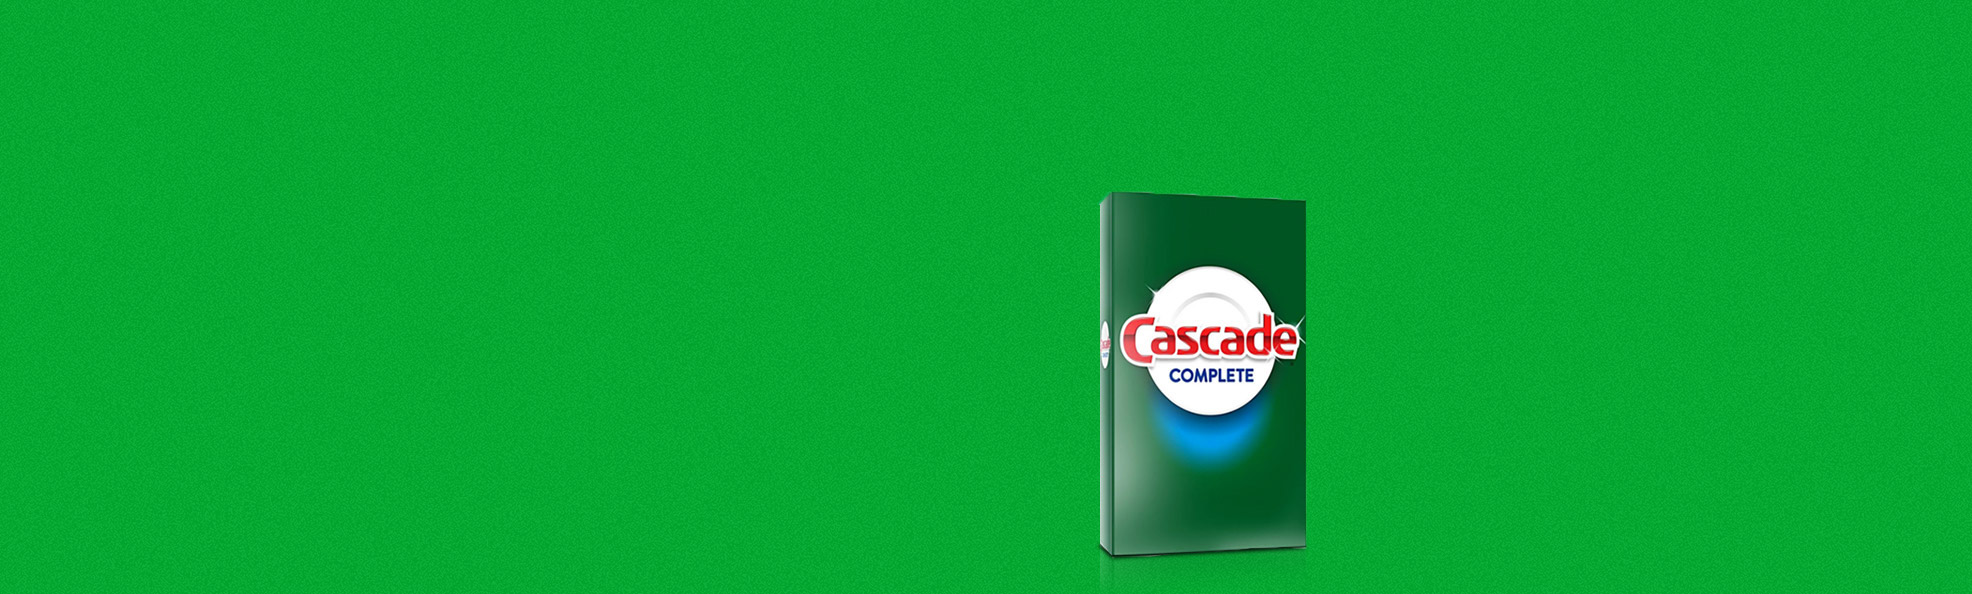 Cascade Complete powder dishwashing detergent horizontal banner